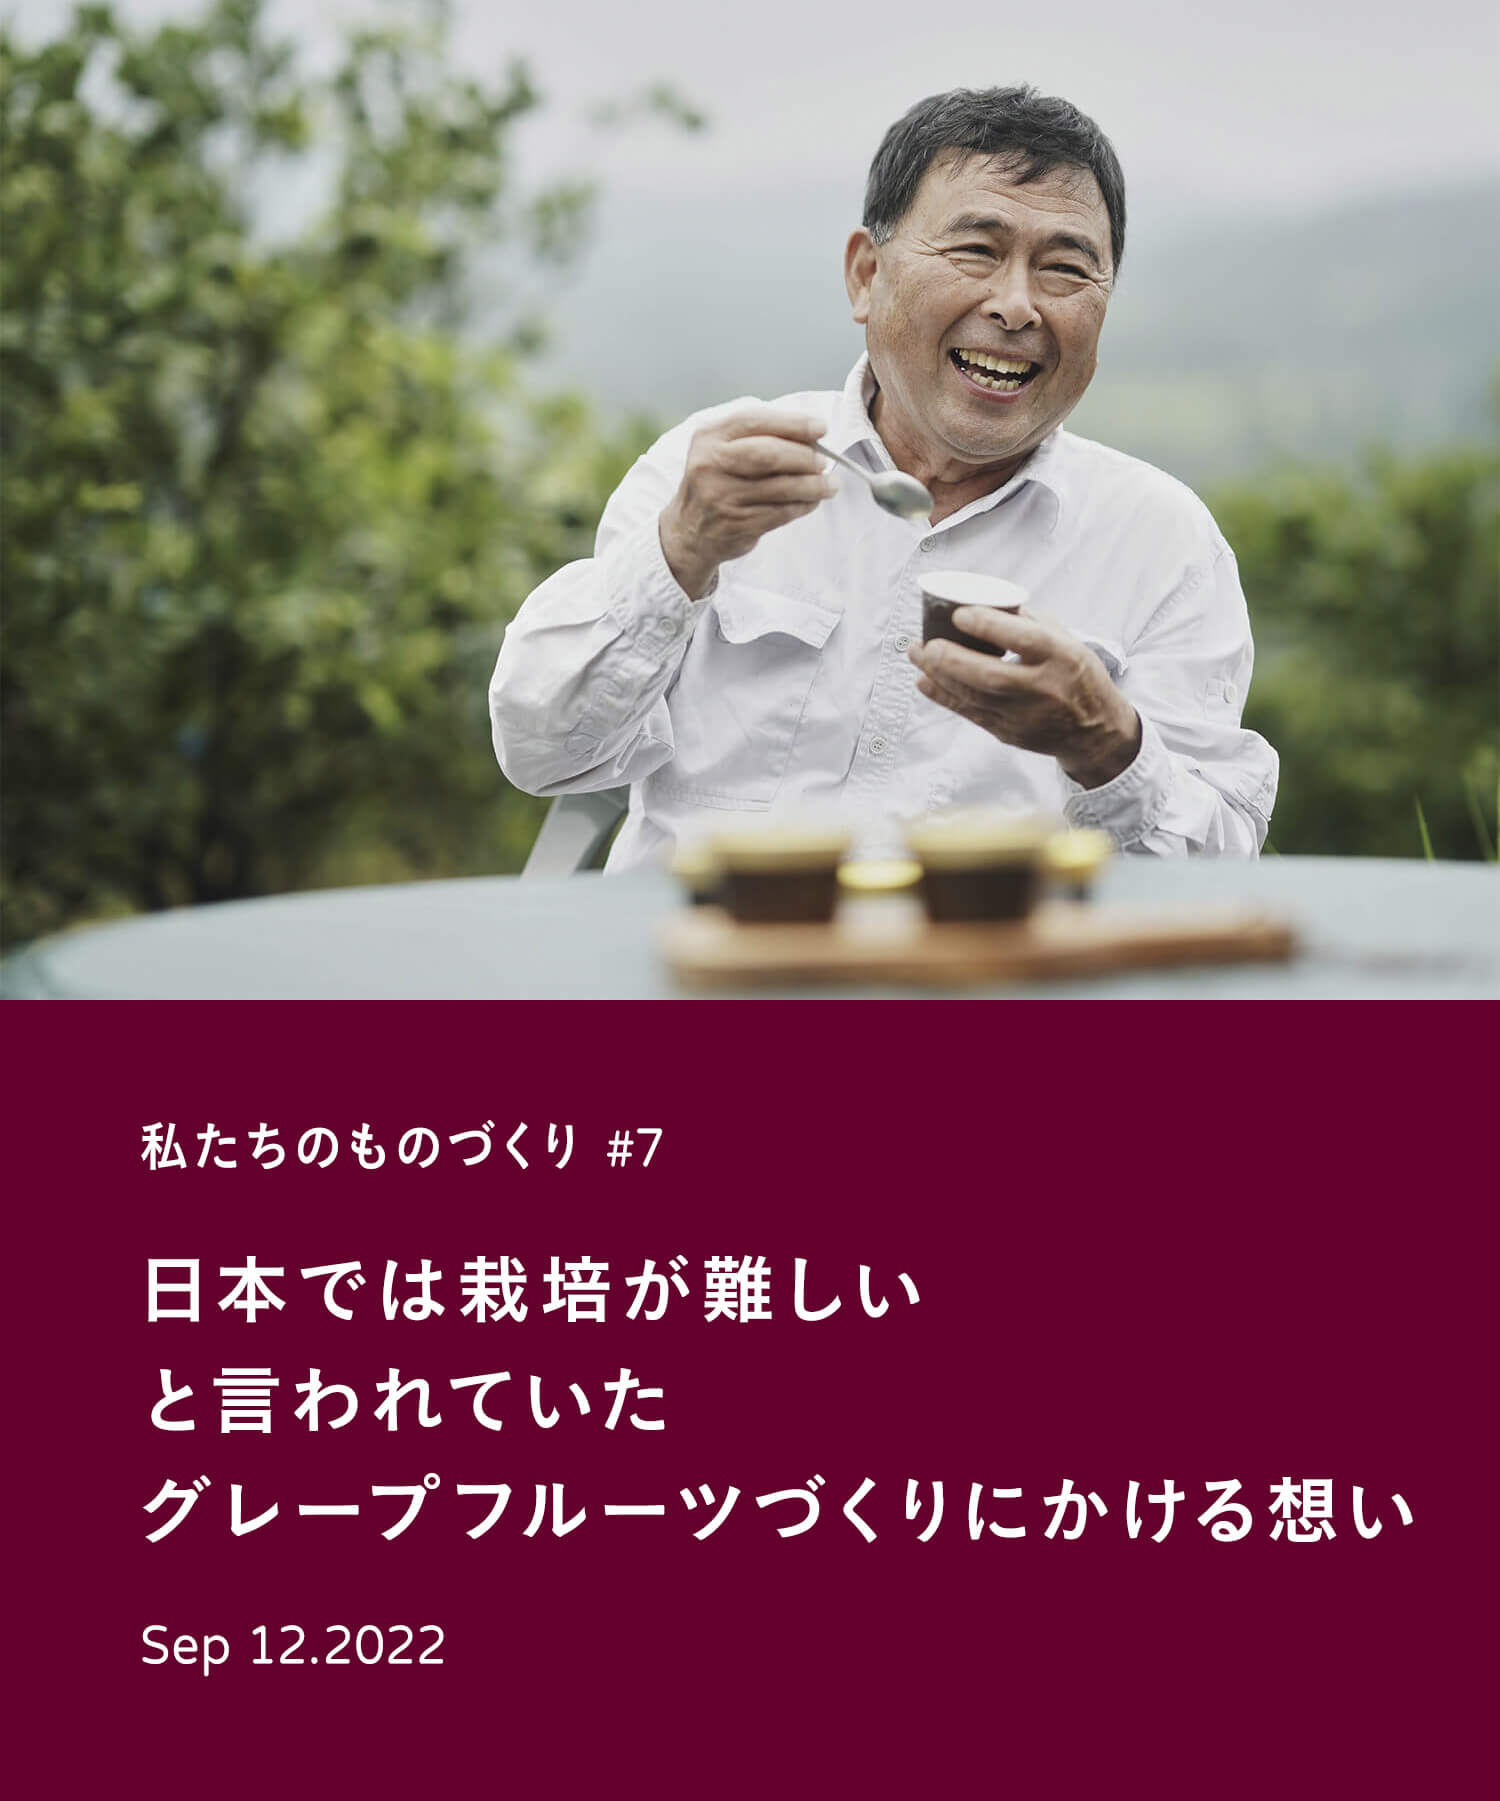 私たちのものづくり #7　日本では栽培が難しいと言われていたグレープフルーツづくりにかける想い